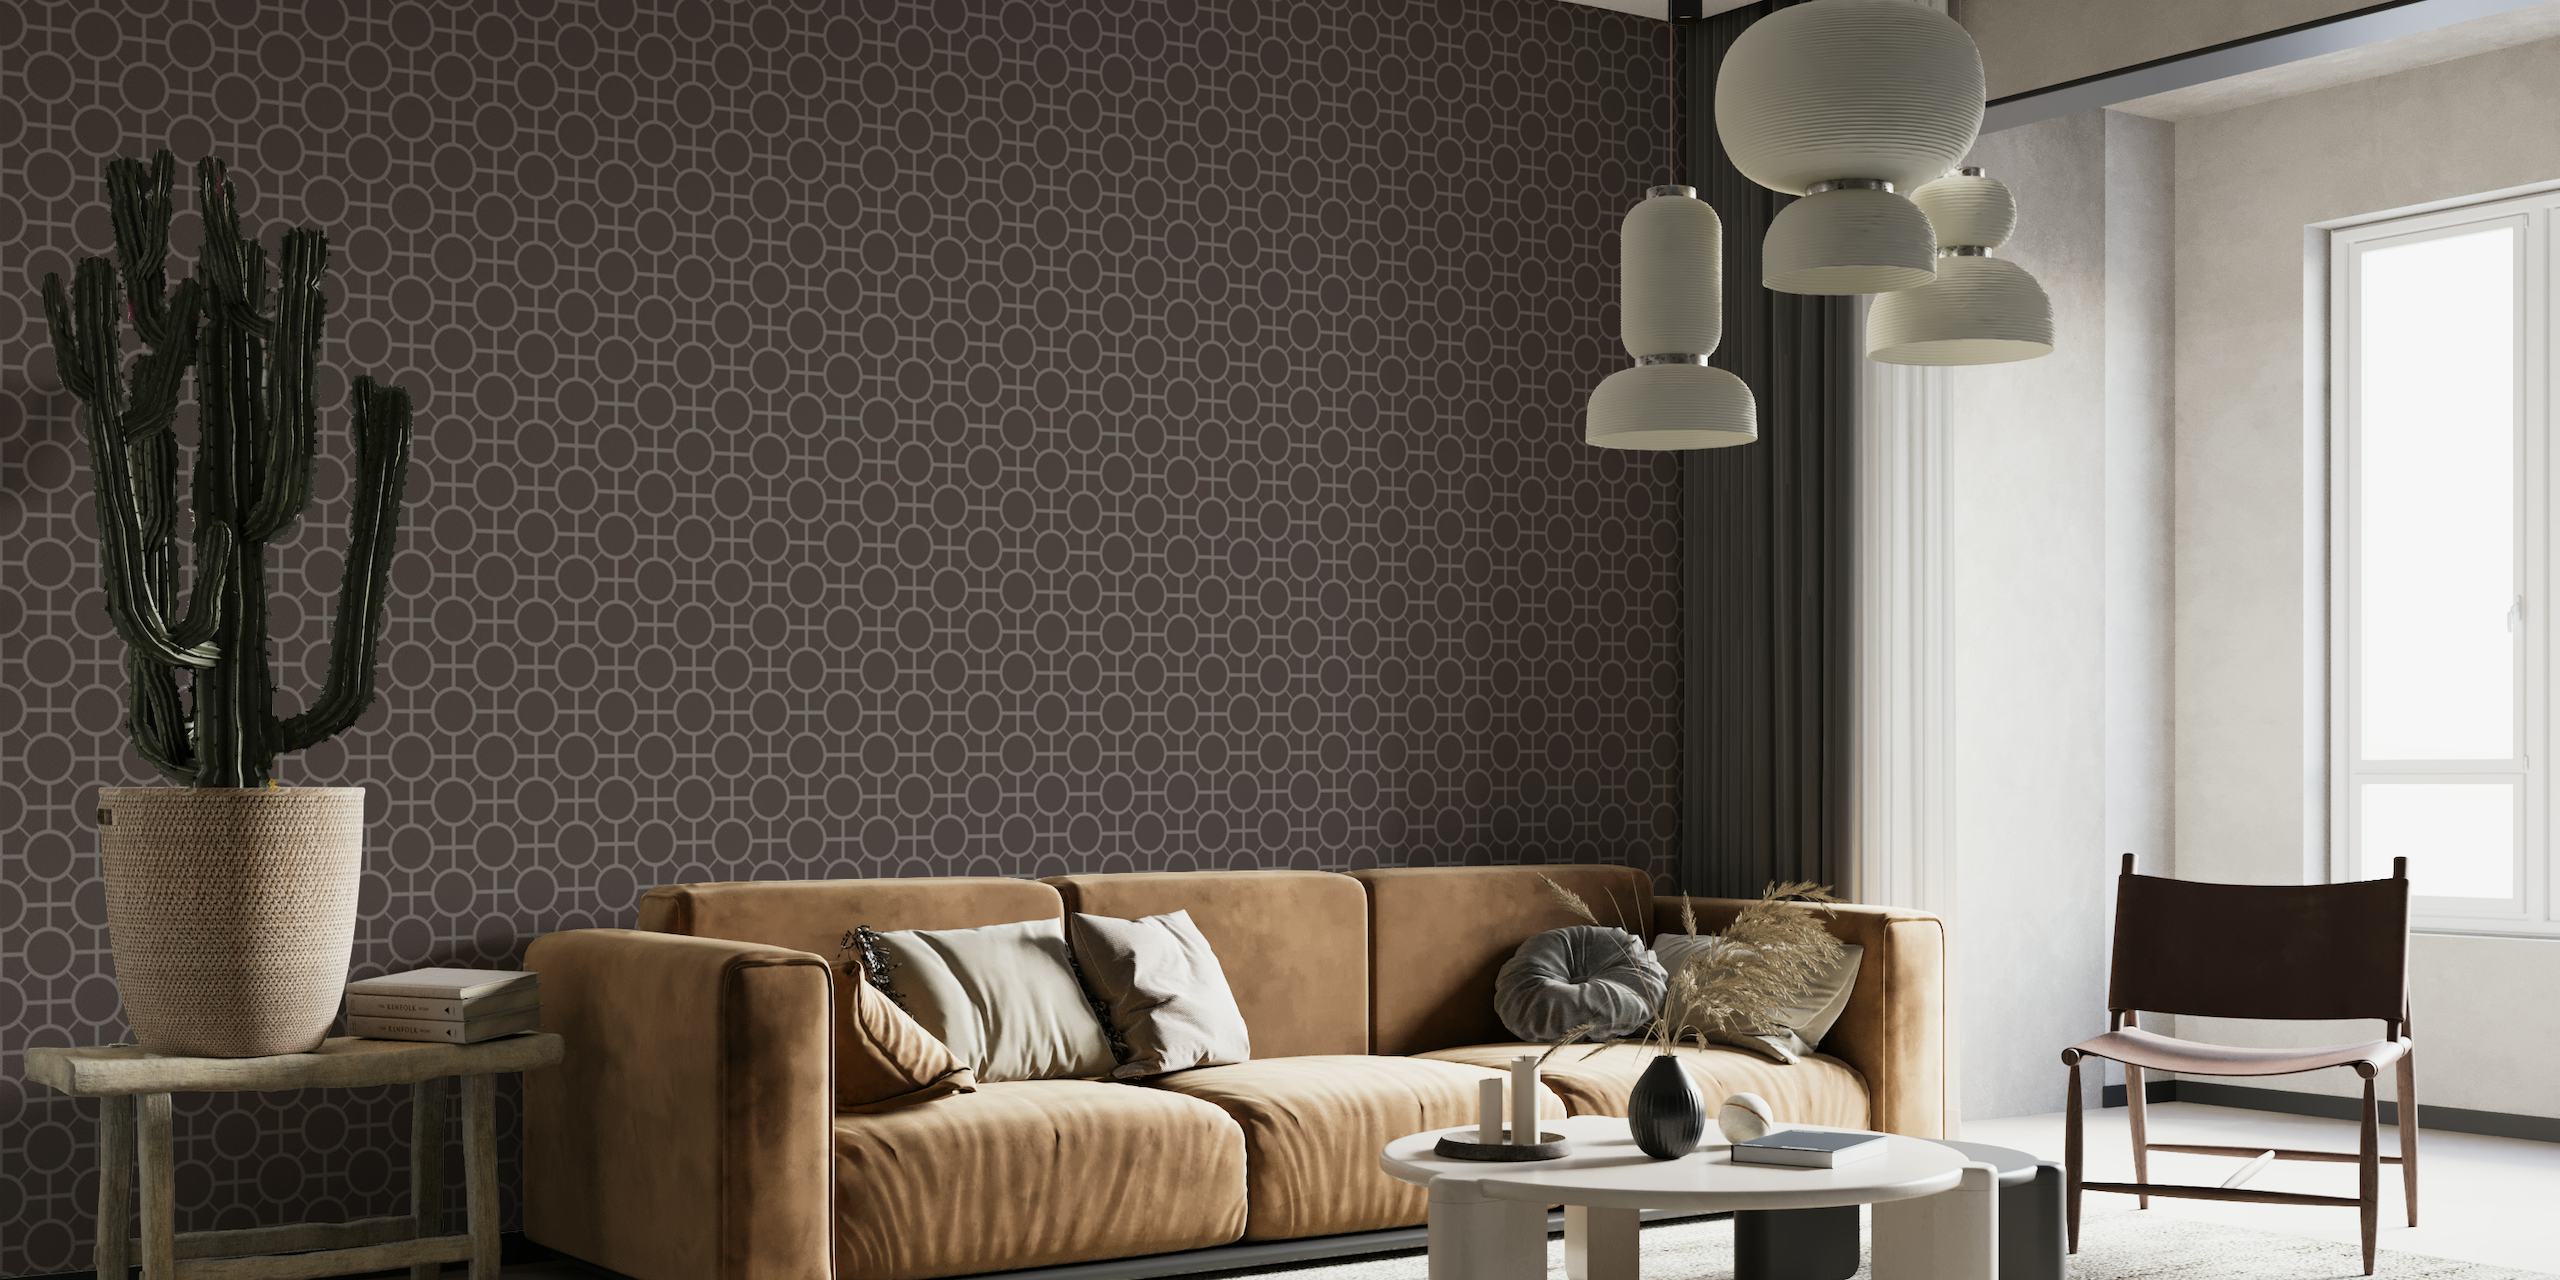 Fotomural vinílico de parede com padrão de azulejo estilo Art Déco em esquema de cores escuras